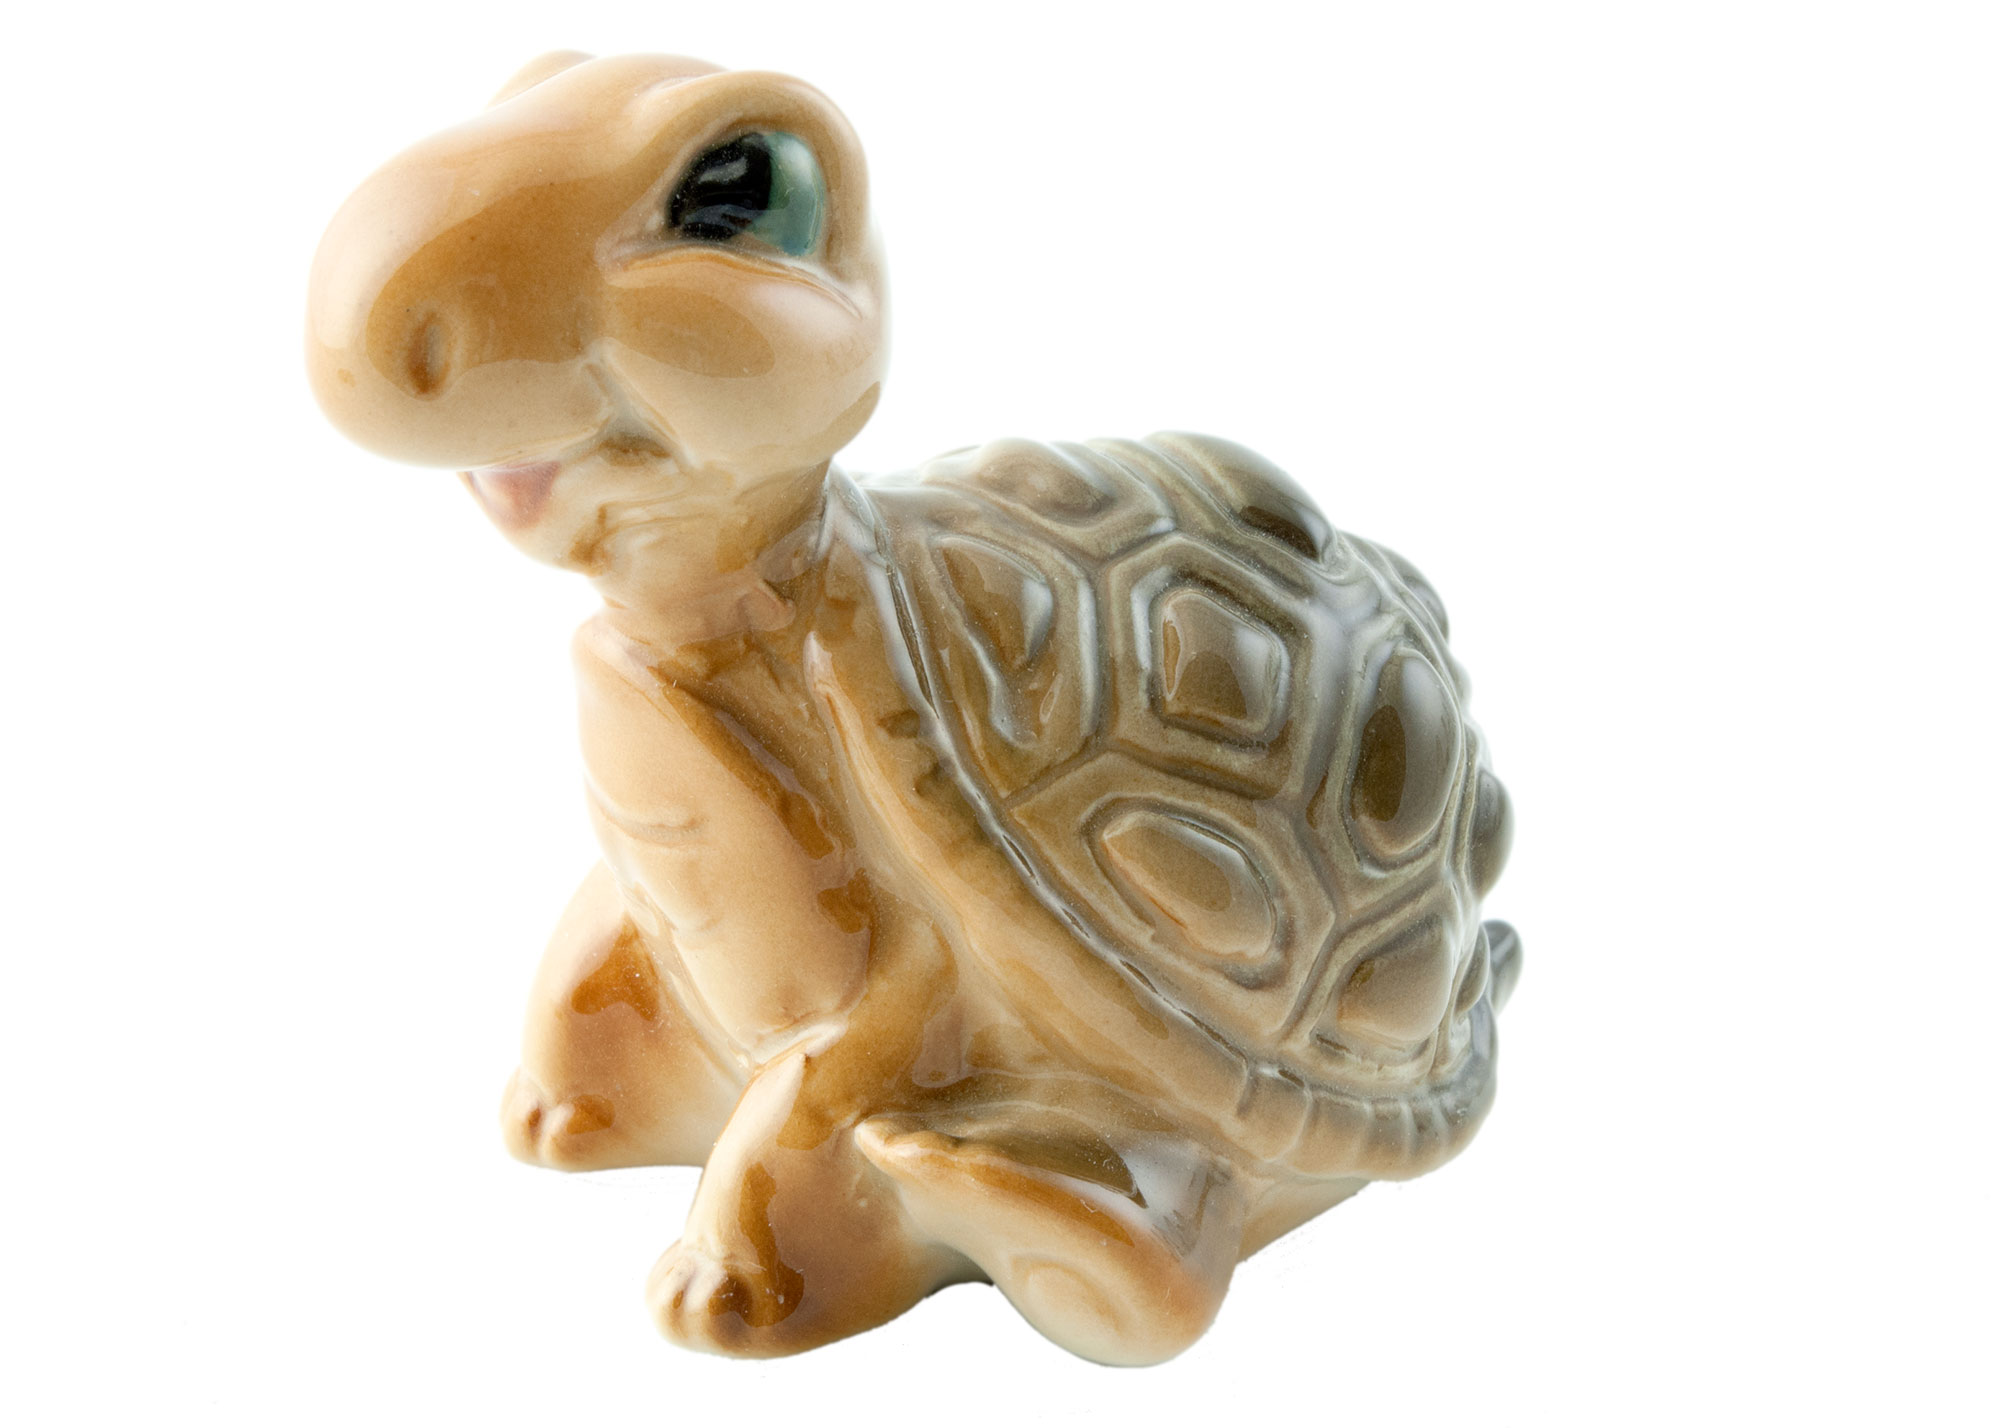 Buy Turtle Porcelain Figurine at GoldenCockerel.com